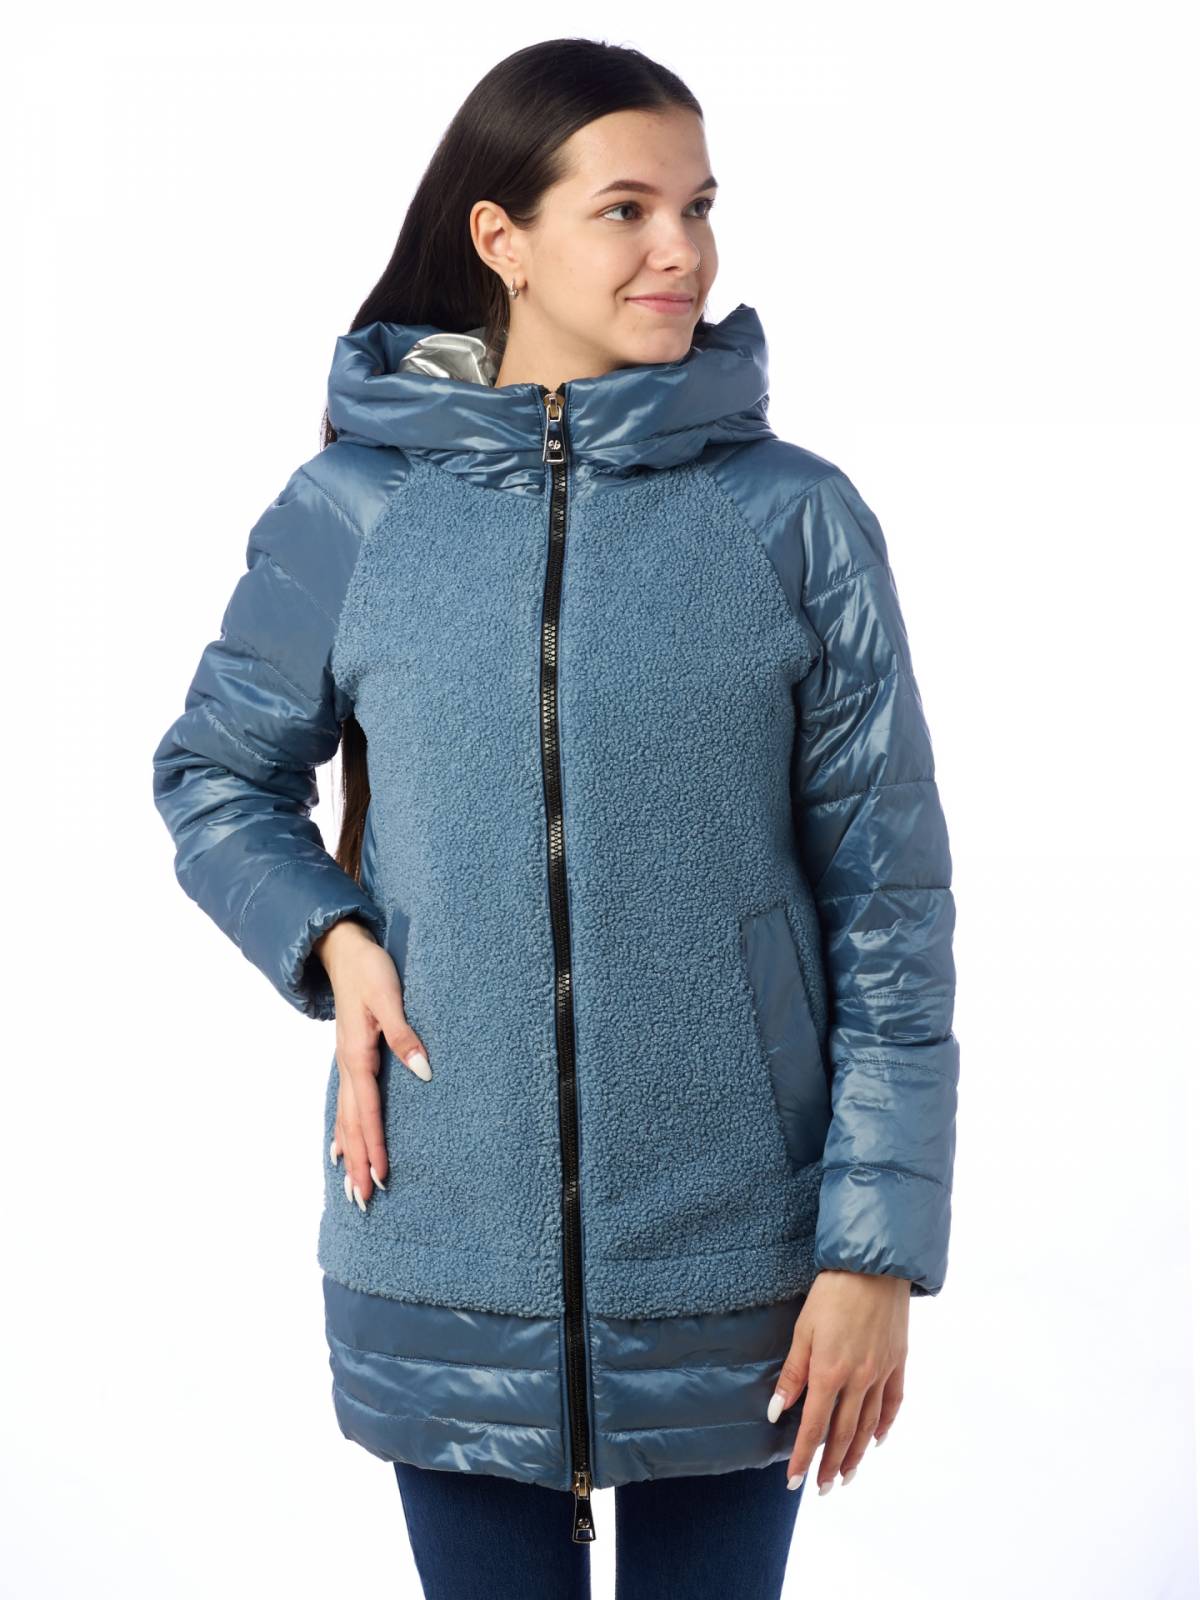 Куртка женская EVACANA 4003 синяя 44 RU